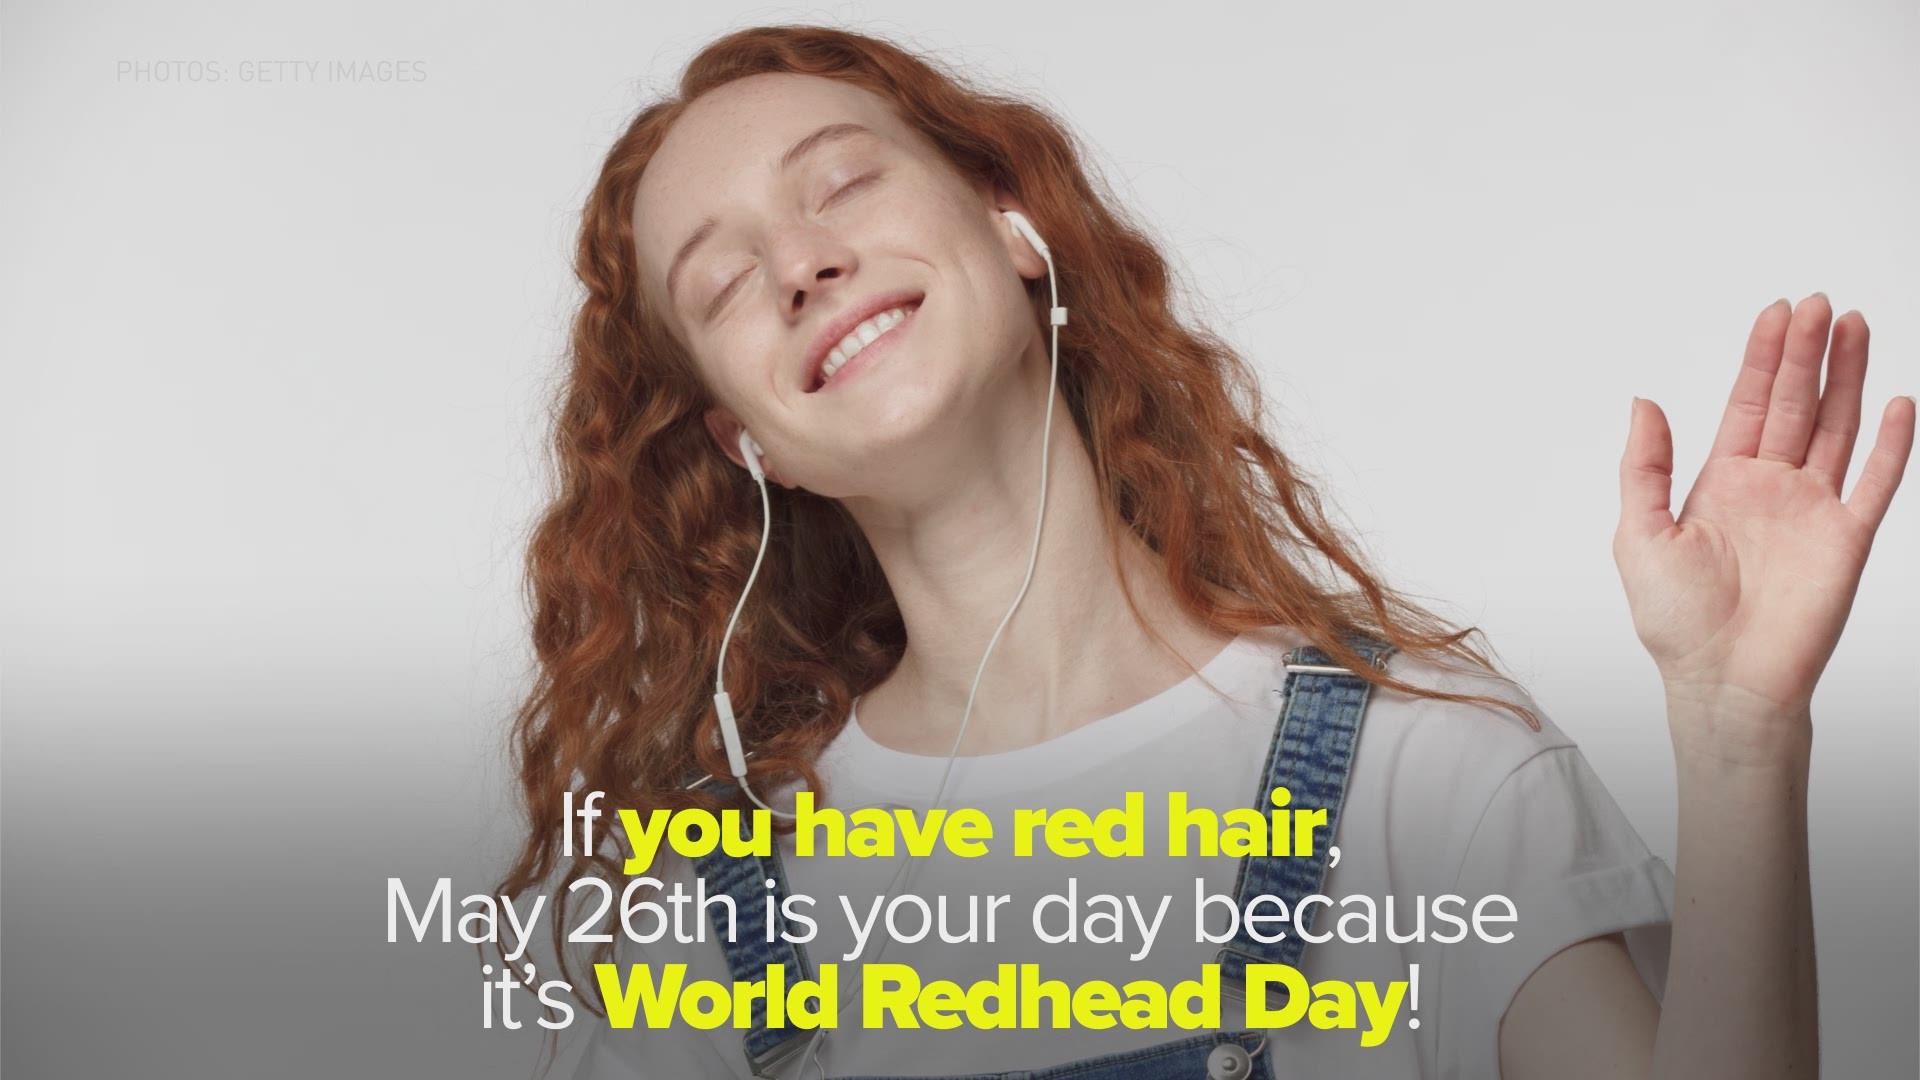 Redhead Day